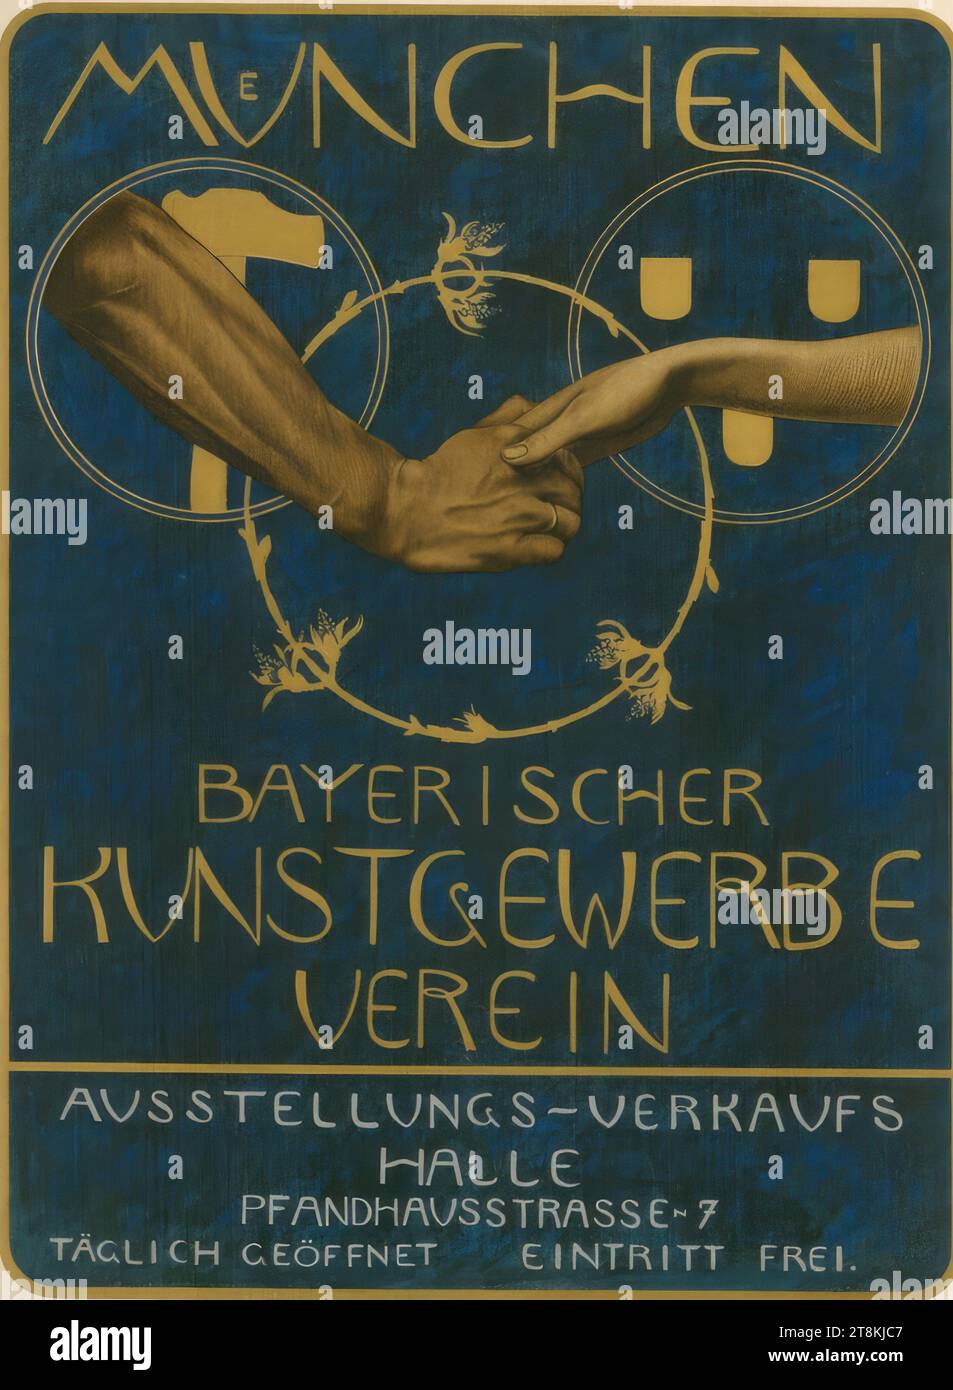 MUNICH; BAVARIAN KUNSTGEWERBEIN, Max Feldbauer, Neumarkt in der Oberpfalz 1869 - 1948 Münchshöfen, Karl Gross, Germany, 1869 - 1934, 1896, print, color lithograph, sheet: 730 mm x 590 mm Stock Photo